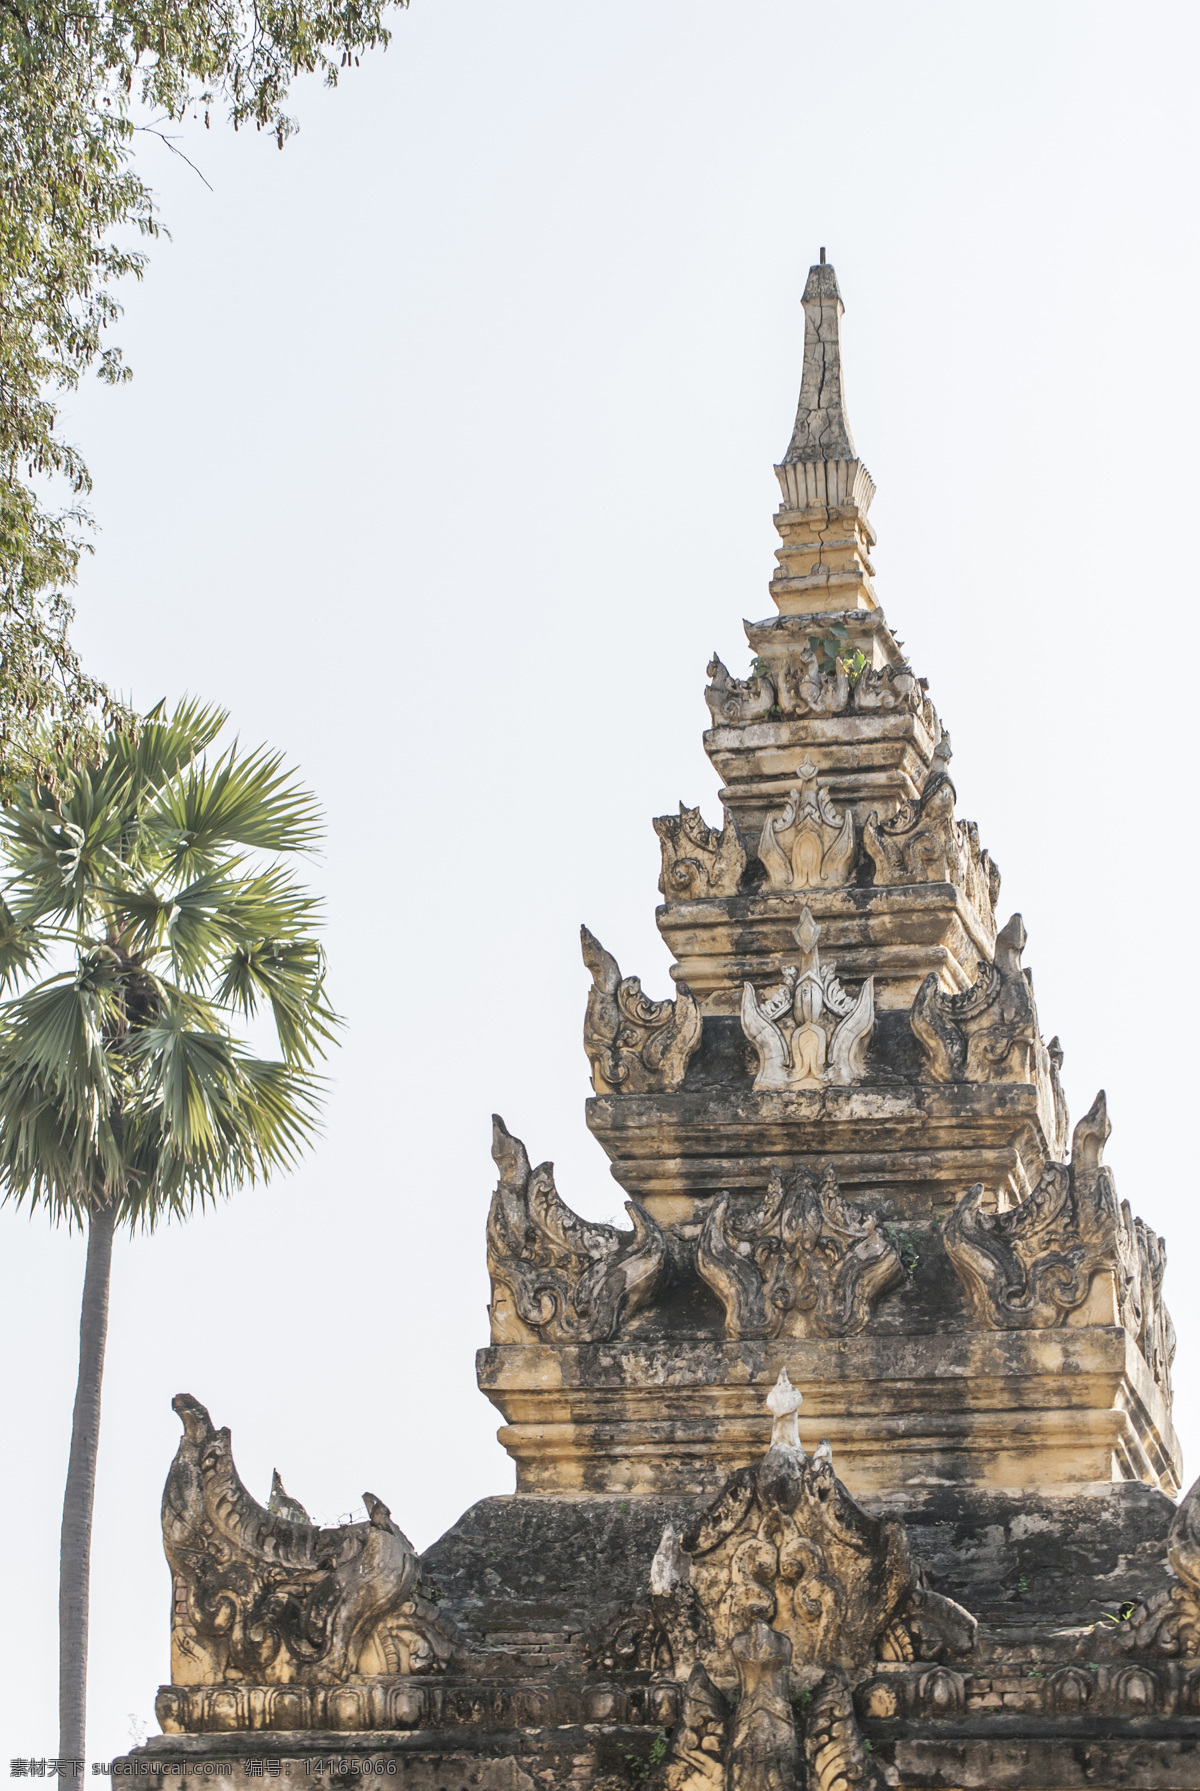 佛塔塔尖 缅甸 瓦城 曼德勒 寺院 佛塔 塔尖 蓝天 大树 曼德勒印象 国外旅游 旅游摄影